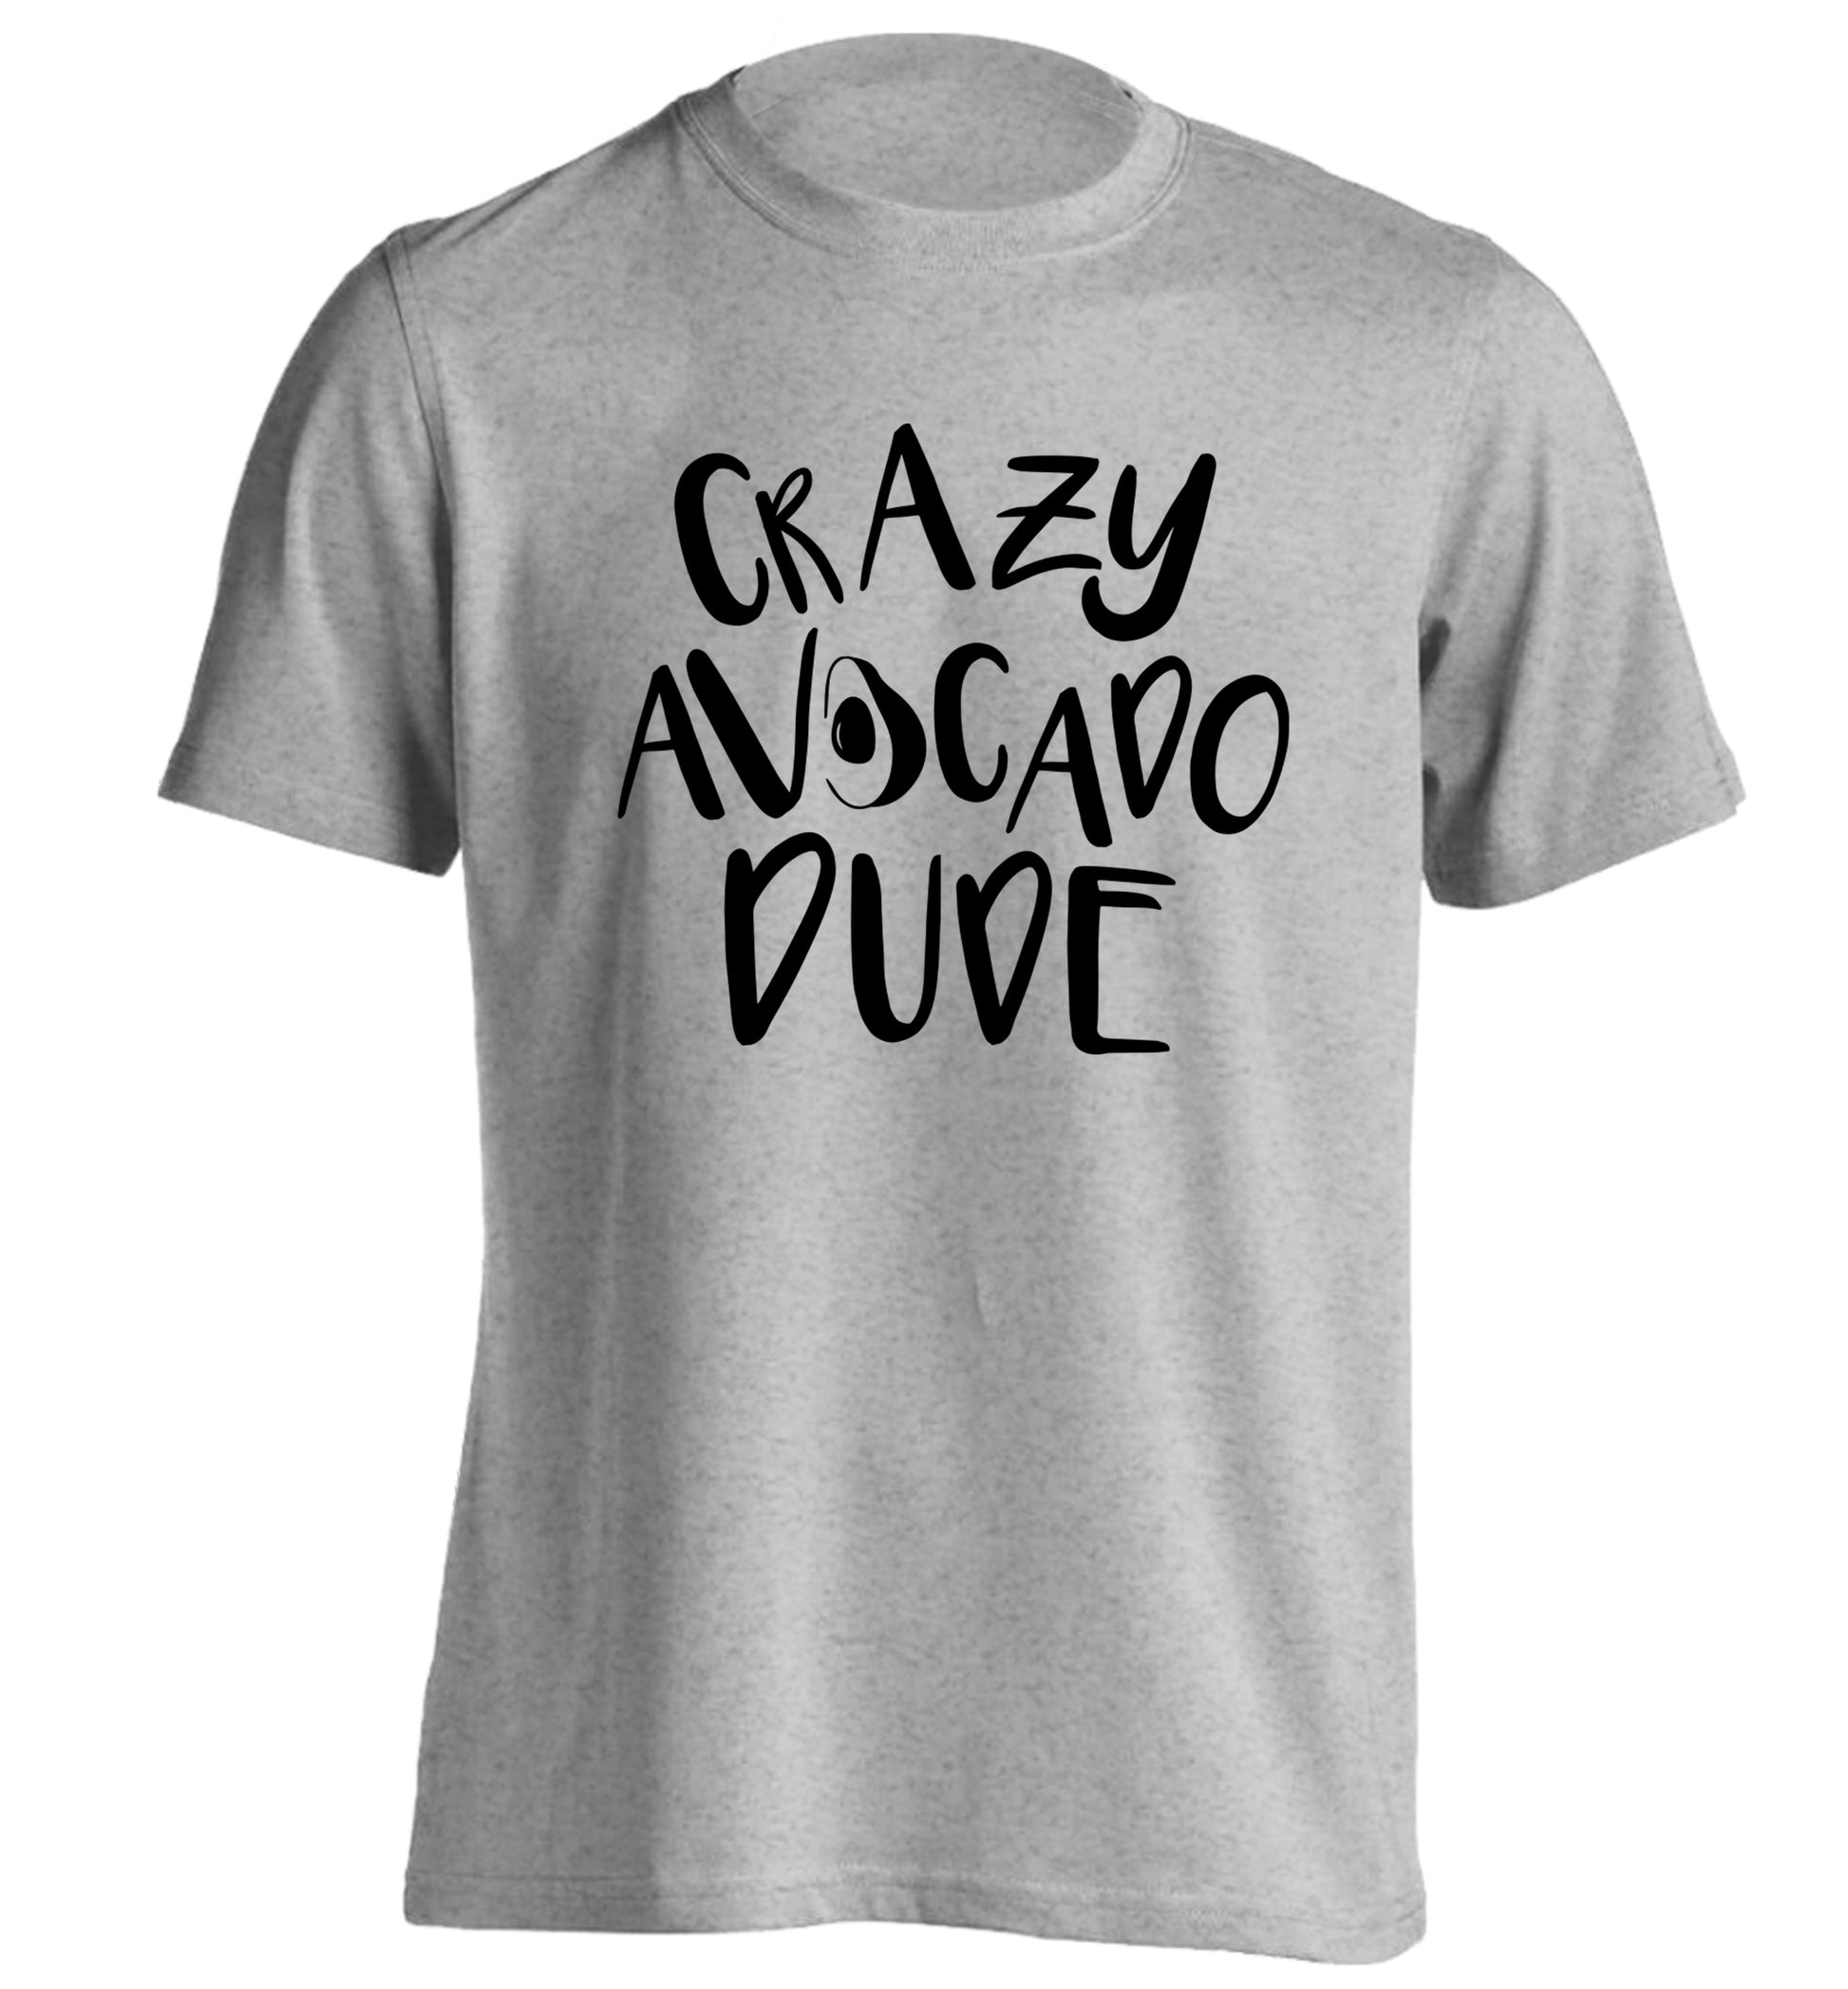 Crazy avocado dude adults unisex grey Tshirt 2XL